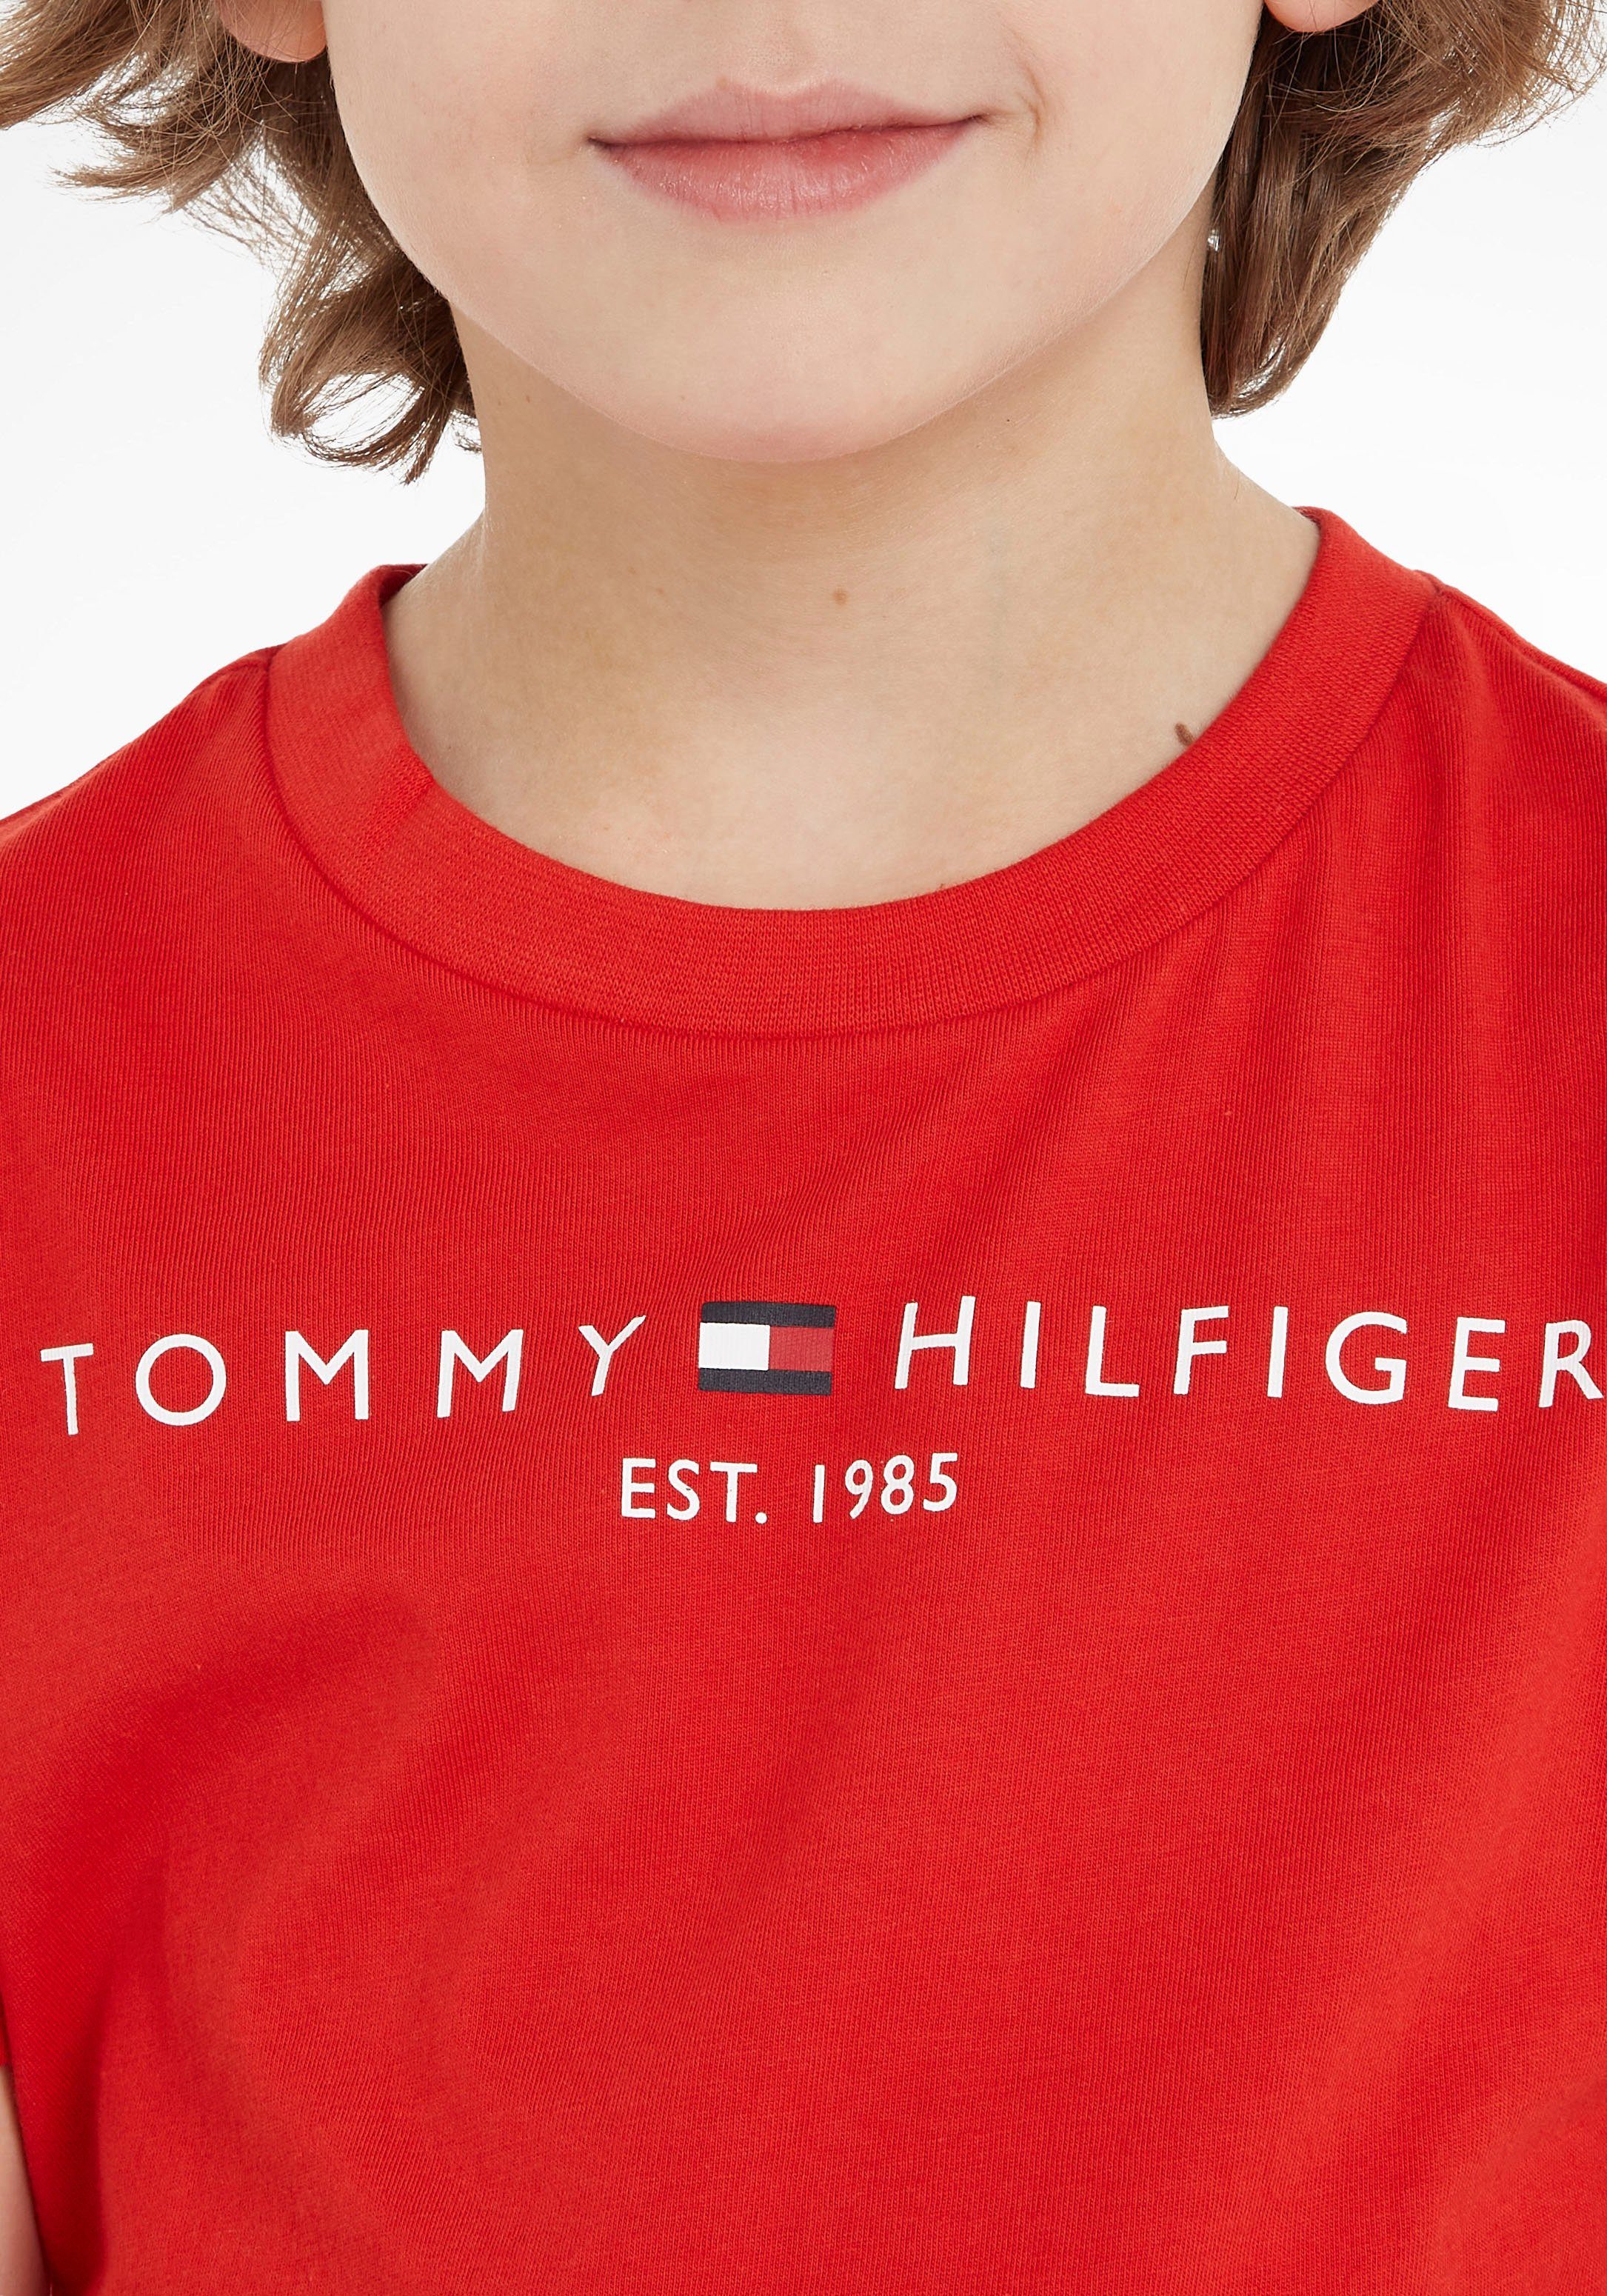 Tommy Hilfiger T-Shirt ESSENTIAL Junior Mädchen MiniMe,für Jungen und Kids TEE Kinder